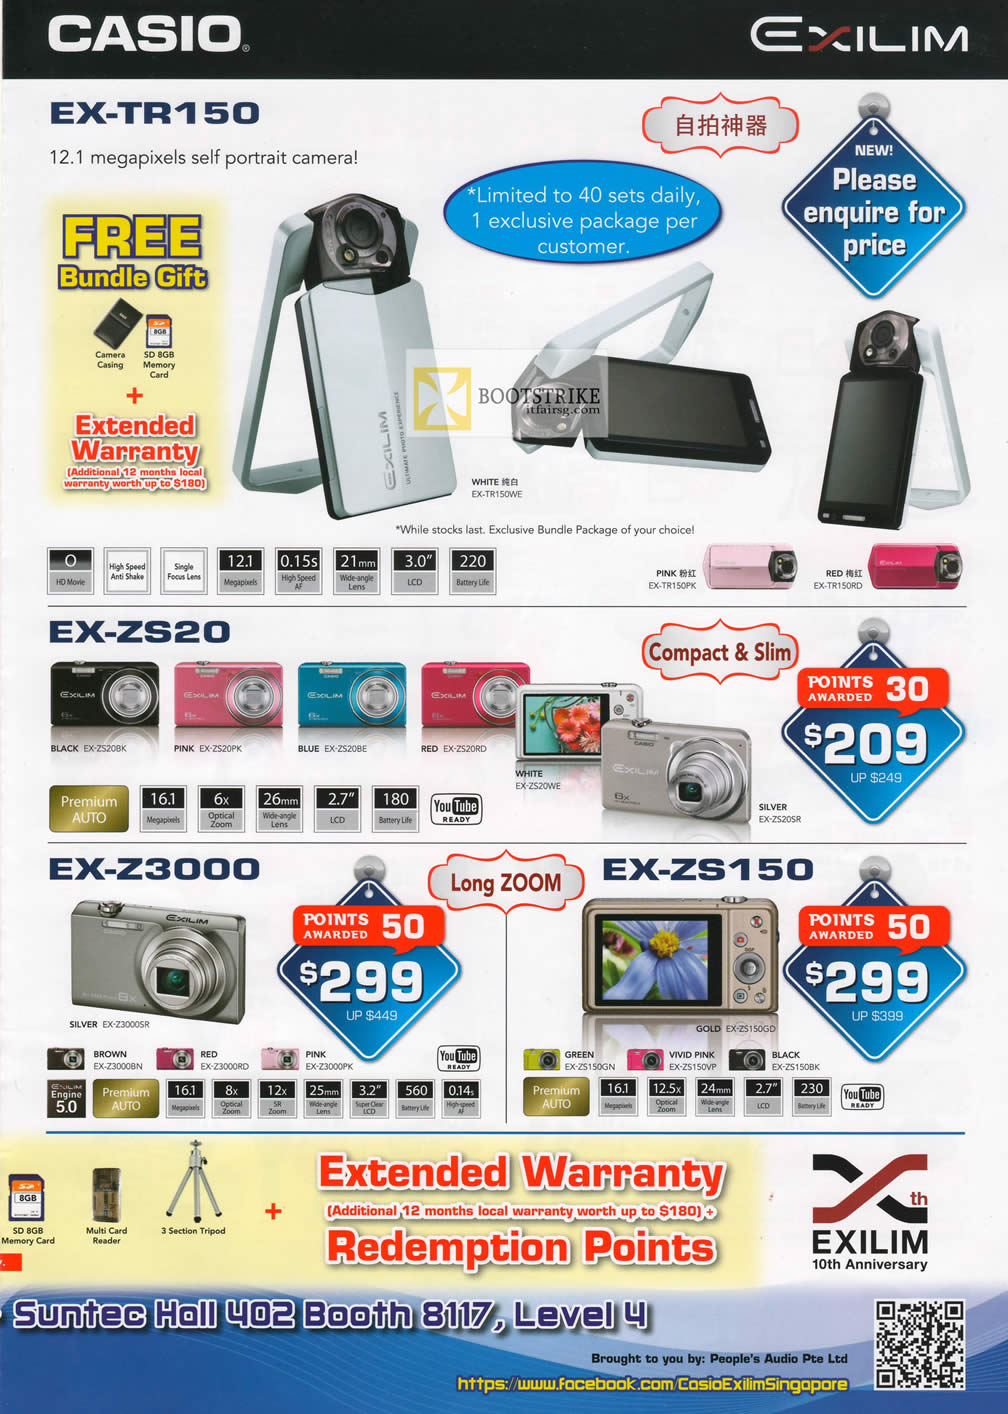 COMEX 2012 price list image brochure of Casio Digital Cameras Exilim EX-TR150, EX-ZS20, EX-Z3000, EX-ZS150